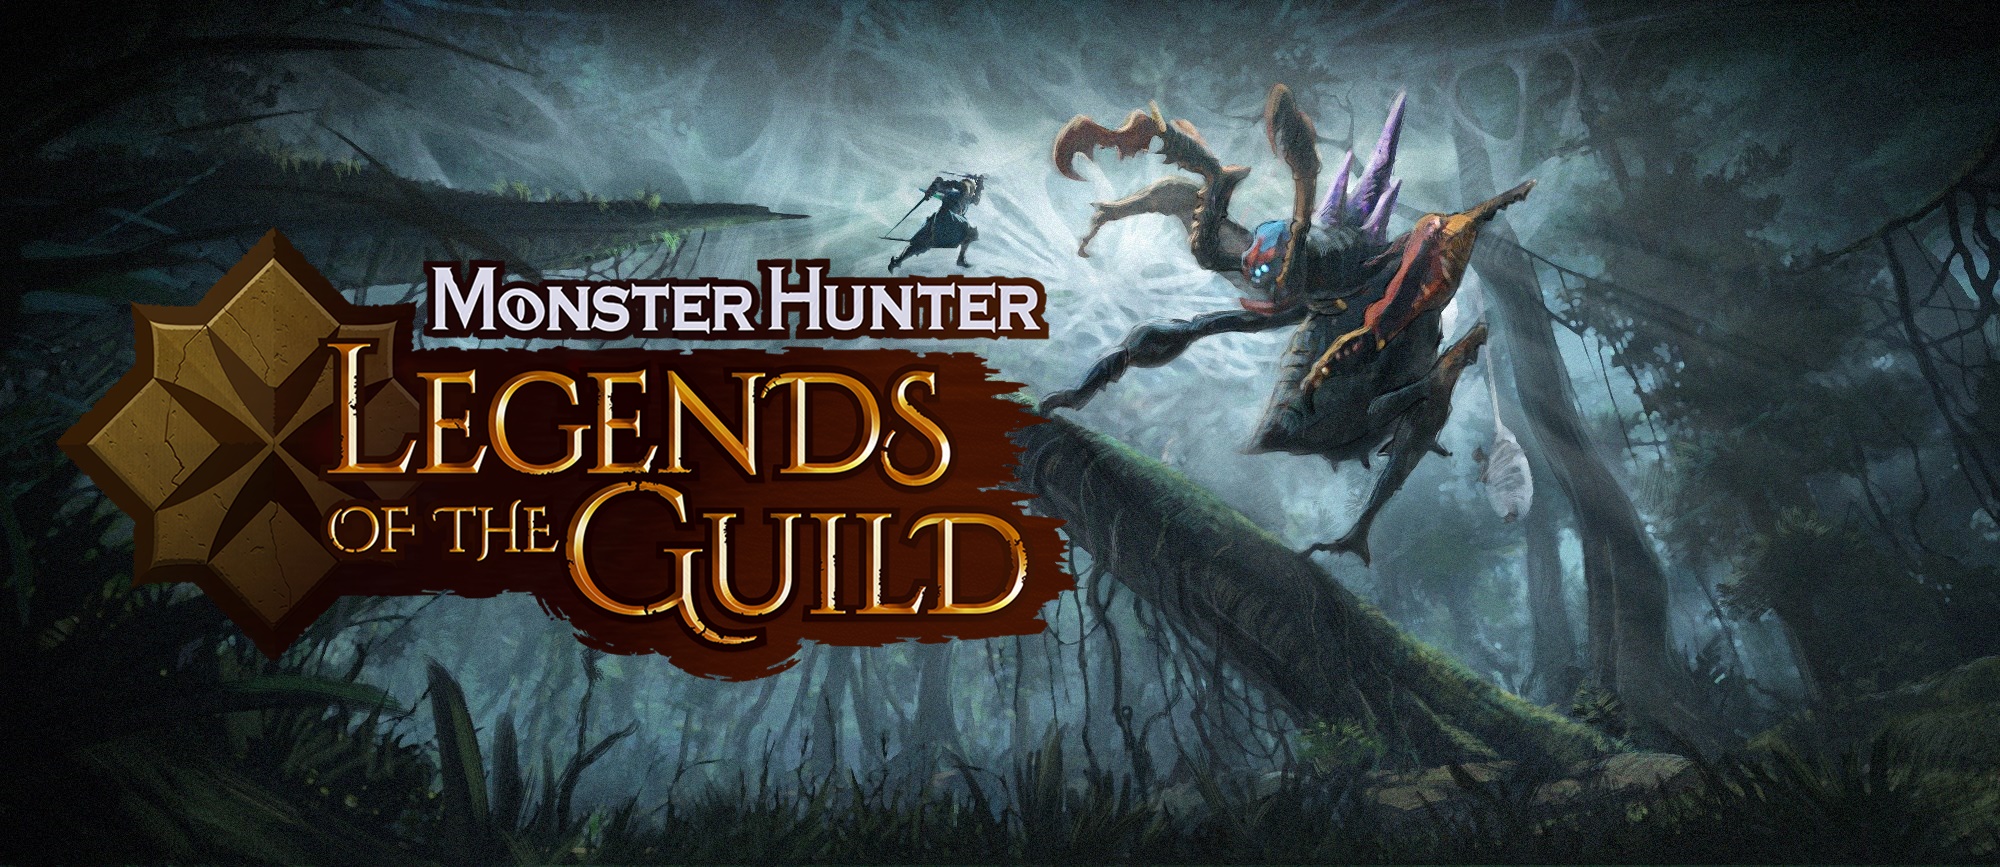 monster hunter: legends of the guild mae death